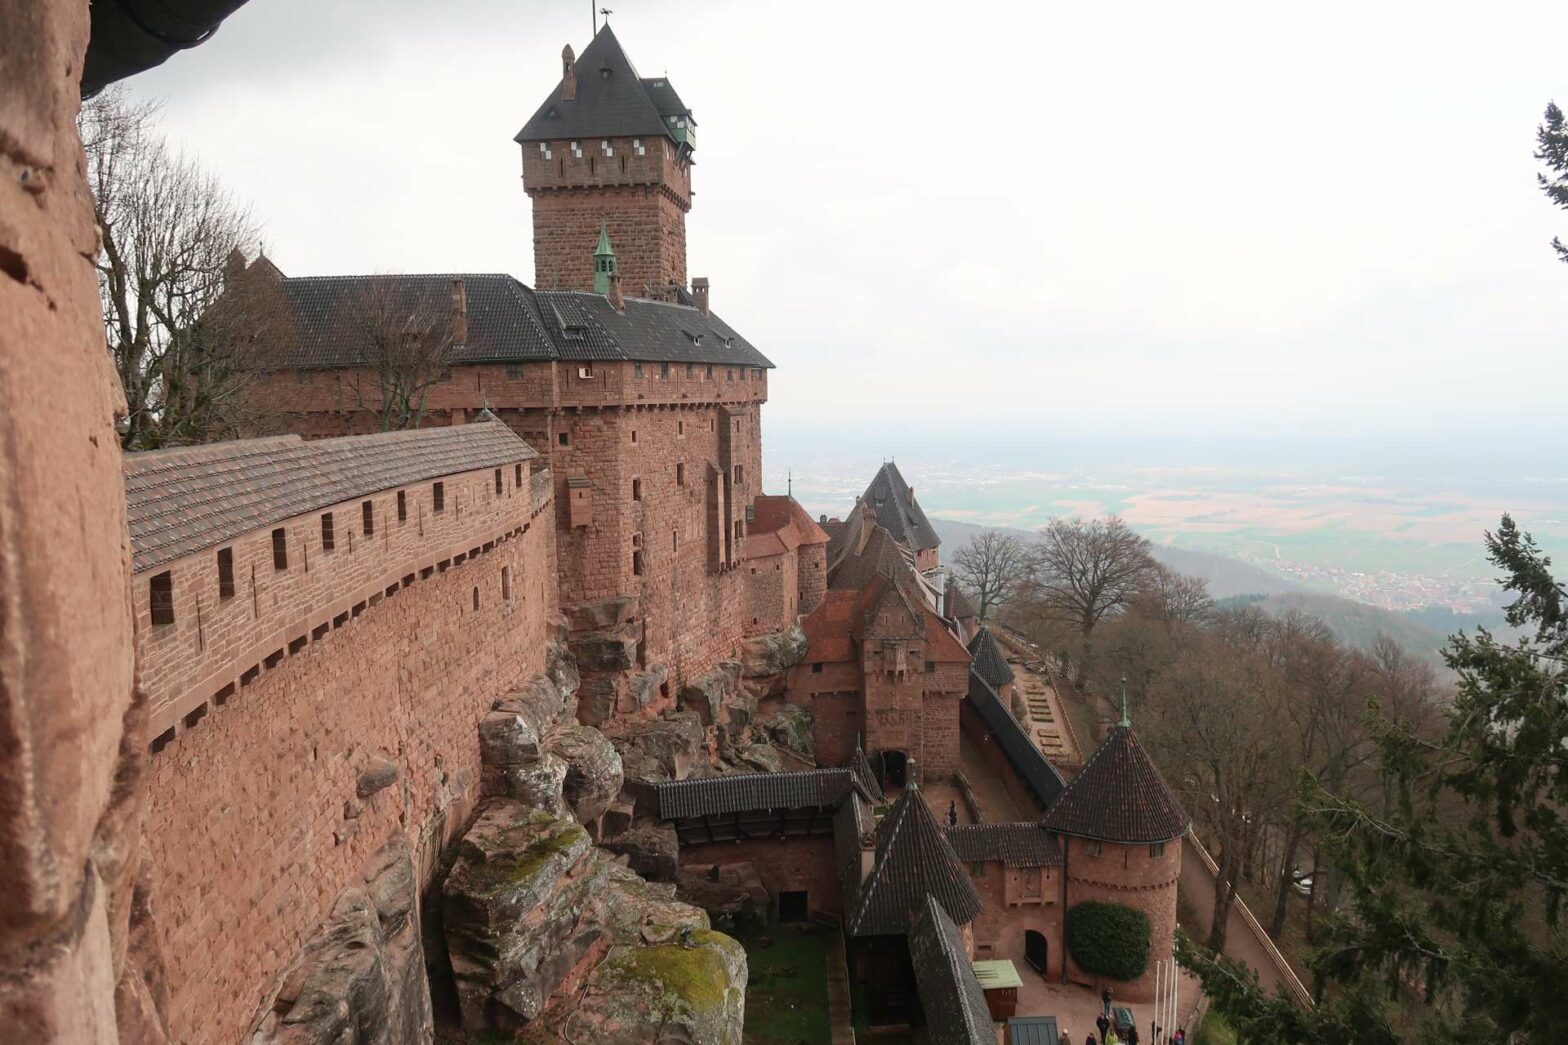 Château du Haut-Koenigsbourg, a castle overlooking the Alsace Region